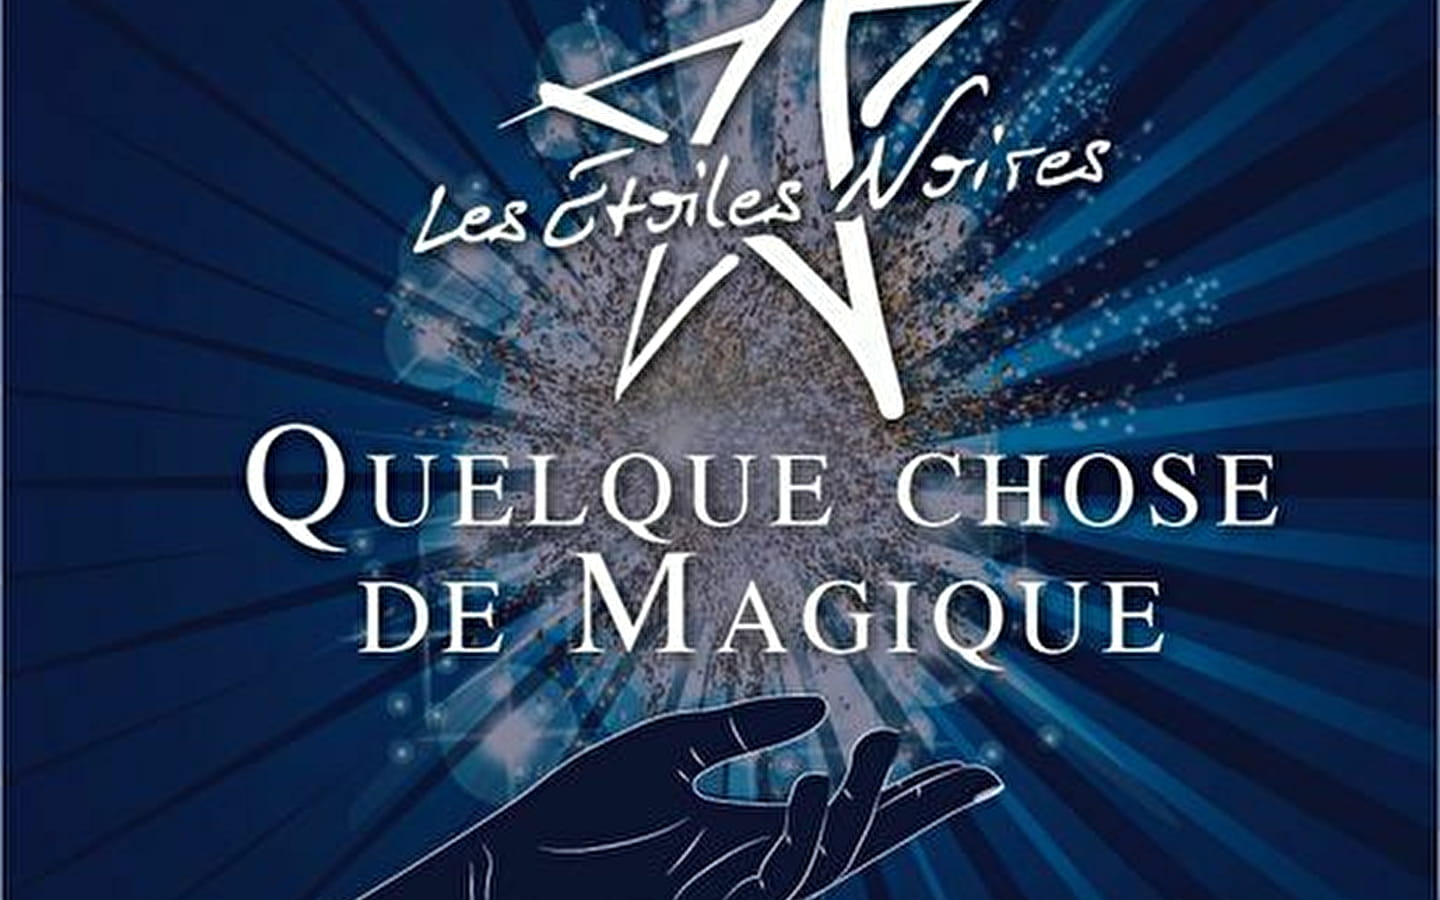 Show - Les Étoiles Noires: Etwas Magisches